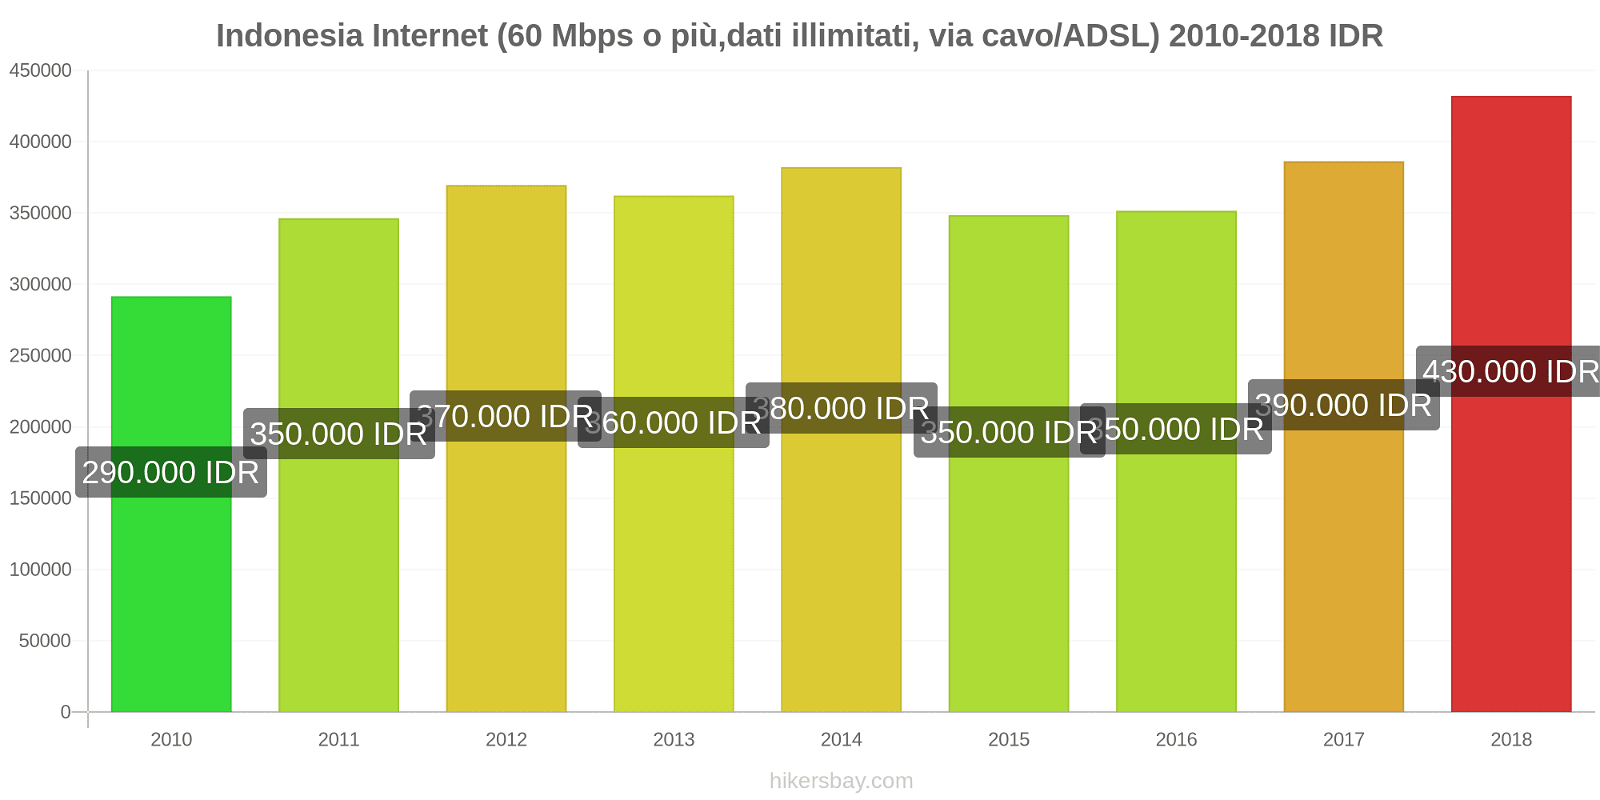 Indonesia cambi di prezzo Internet (60 Mbps o più, dati illimitati, cavo/ADSL) hikersbay.com